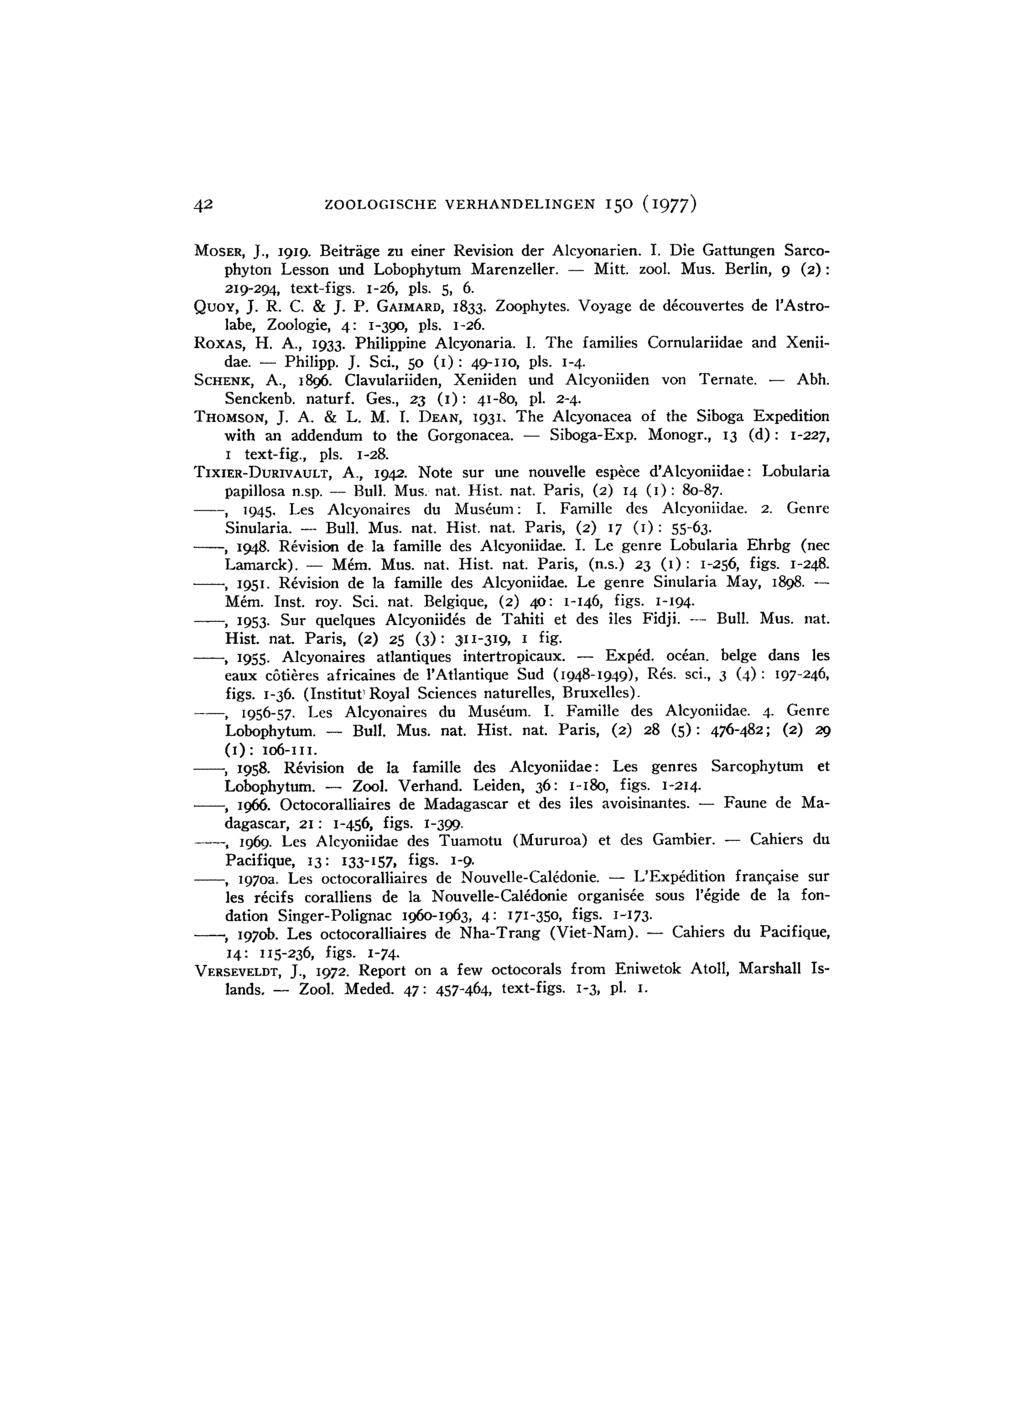 42 ZOOLOGISCHE VERHANDELINGEN 150 (1977) MOSER, J., 1919. Beiträge zu einer Revision der Alcyonarien. I. Die Gattungen Sarcophyton Lesson und Lobophytum Marenzeller. Mitt. zool. Mus.